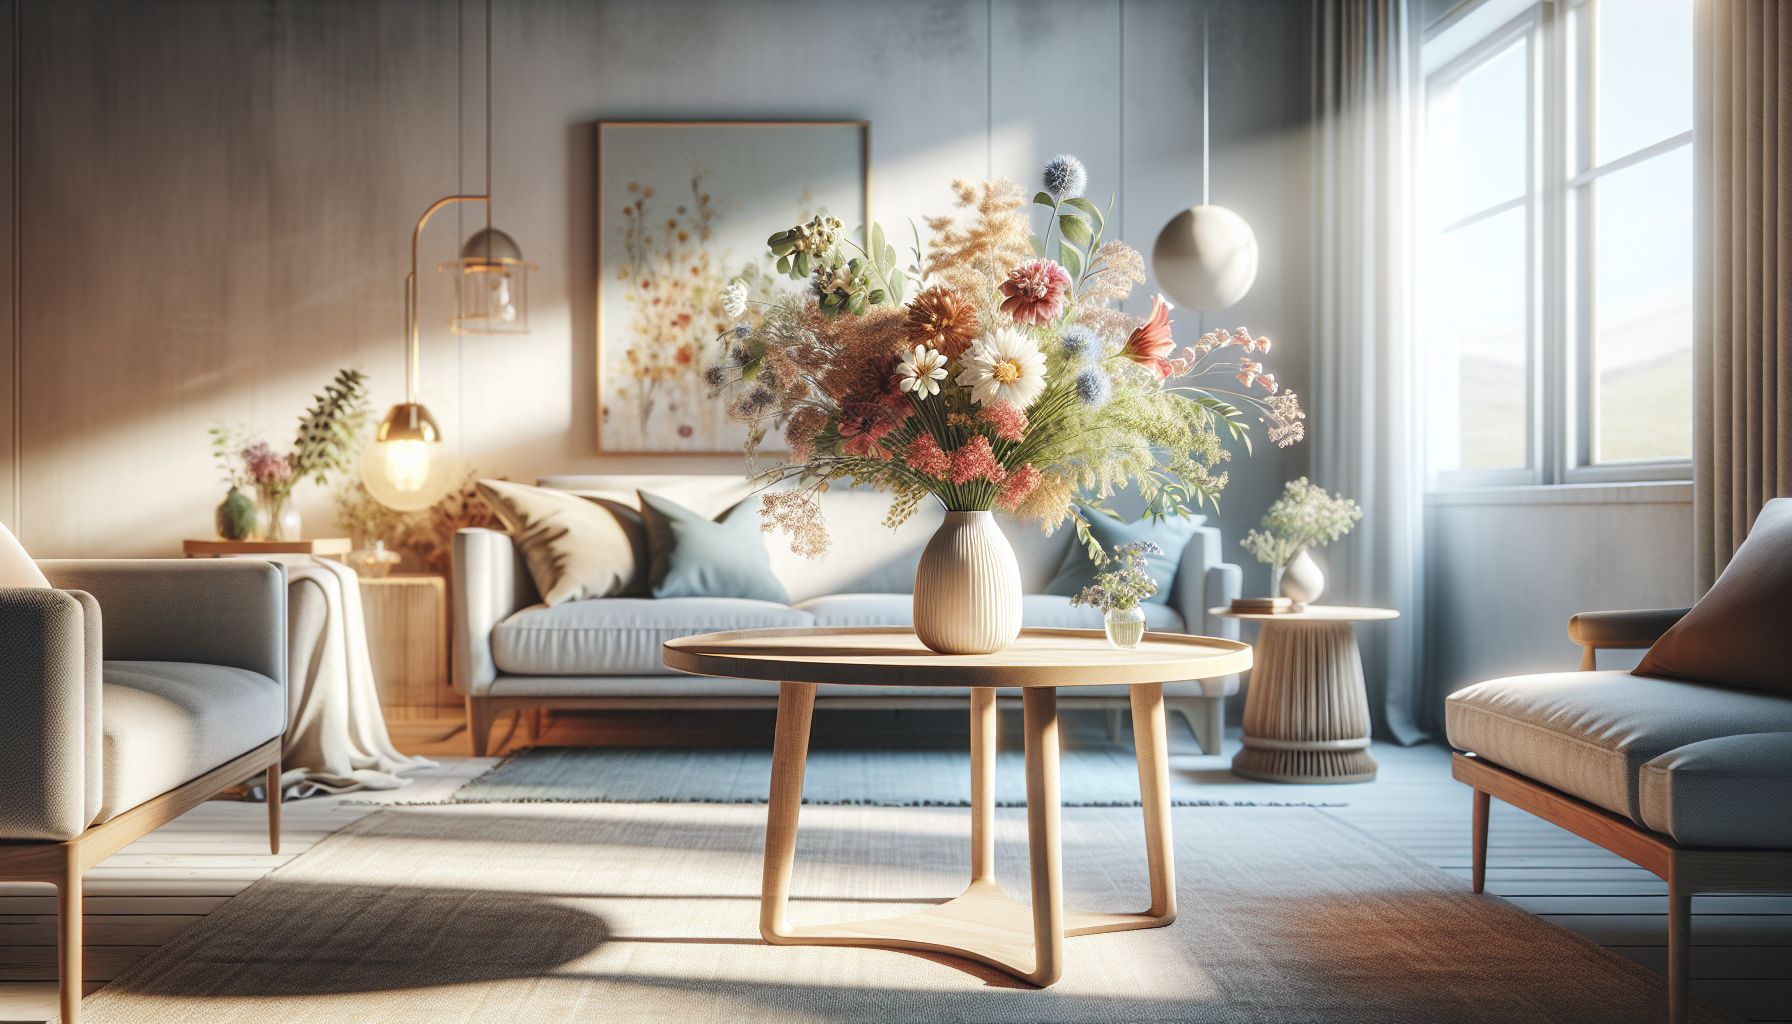 Ideen für schöne Tischdeko in deinem Wohnzimmer-Nutze frische Blumen für Natürlichkeit